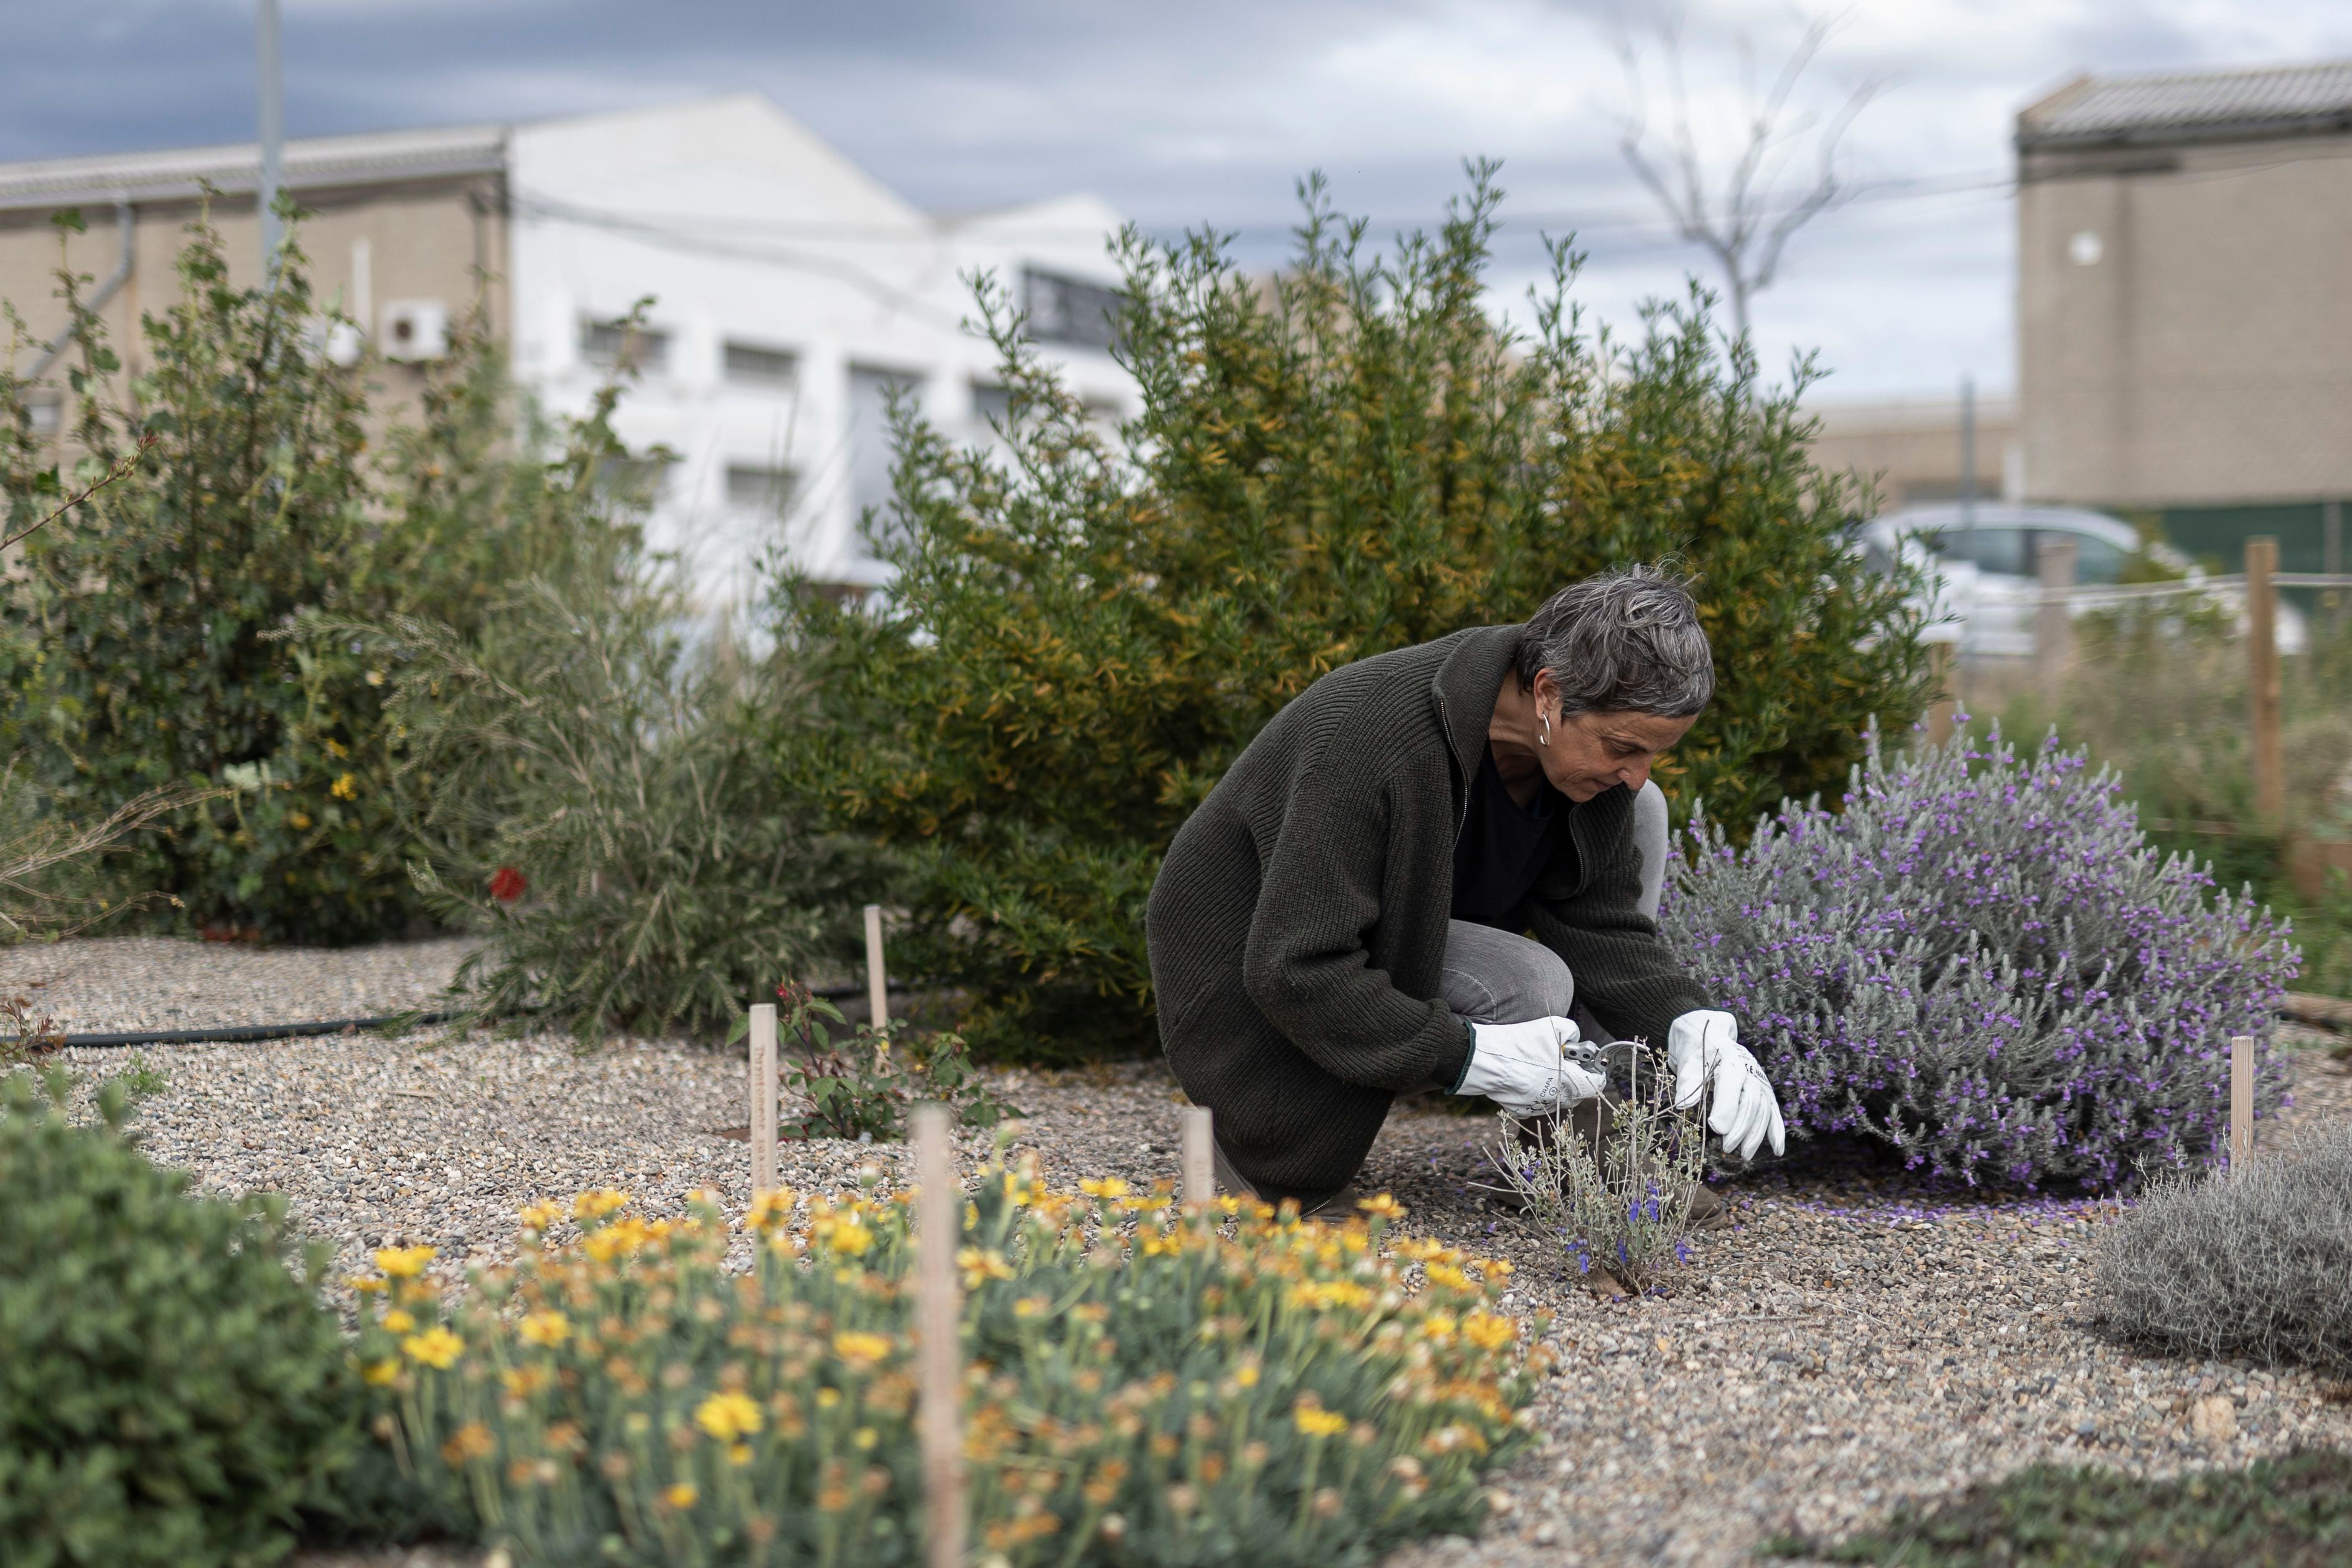 El jardín mediterráneo del futuro florece en Barcelona: “Llevamos cinco años sin regar”